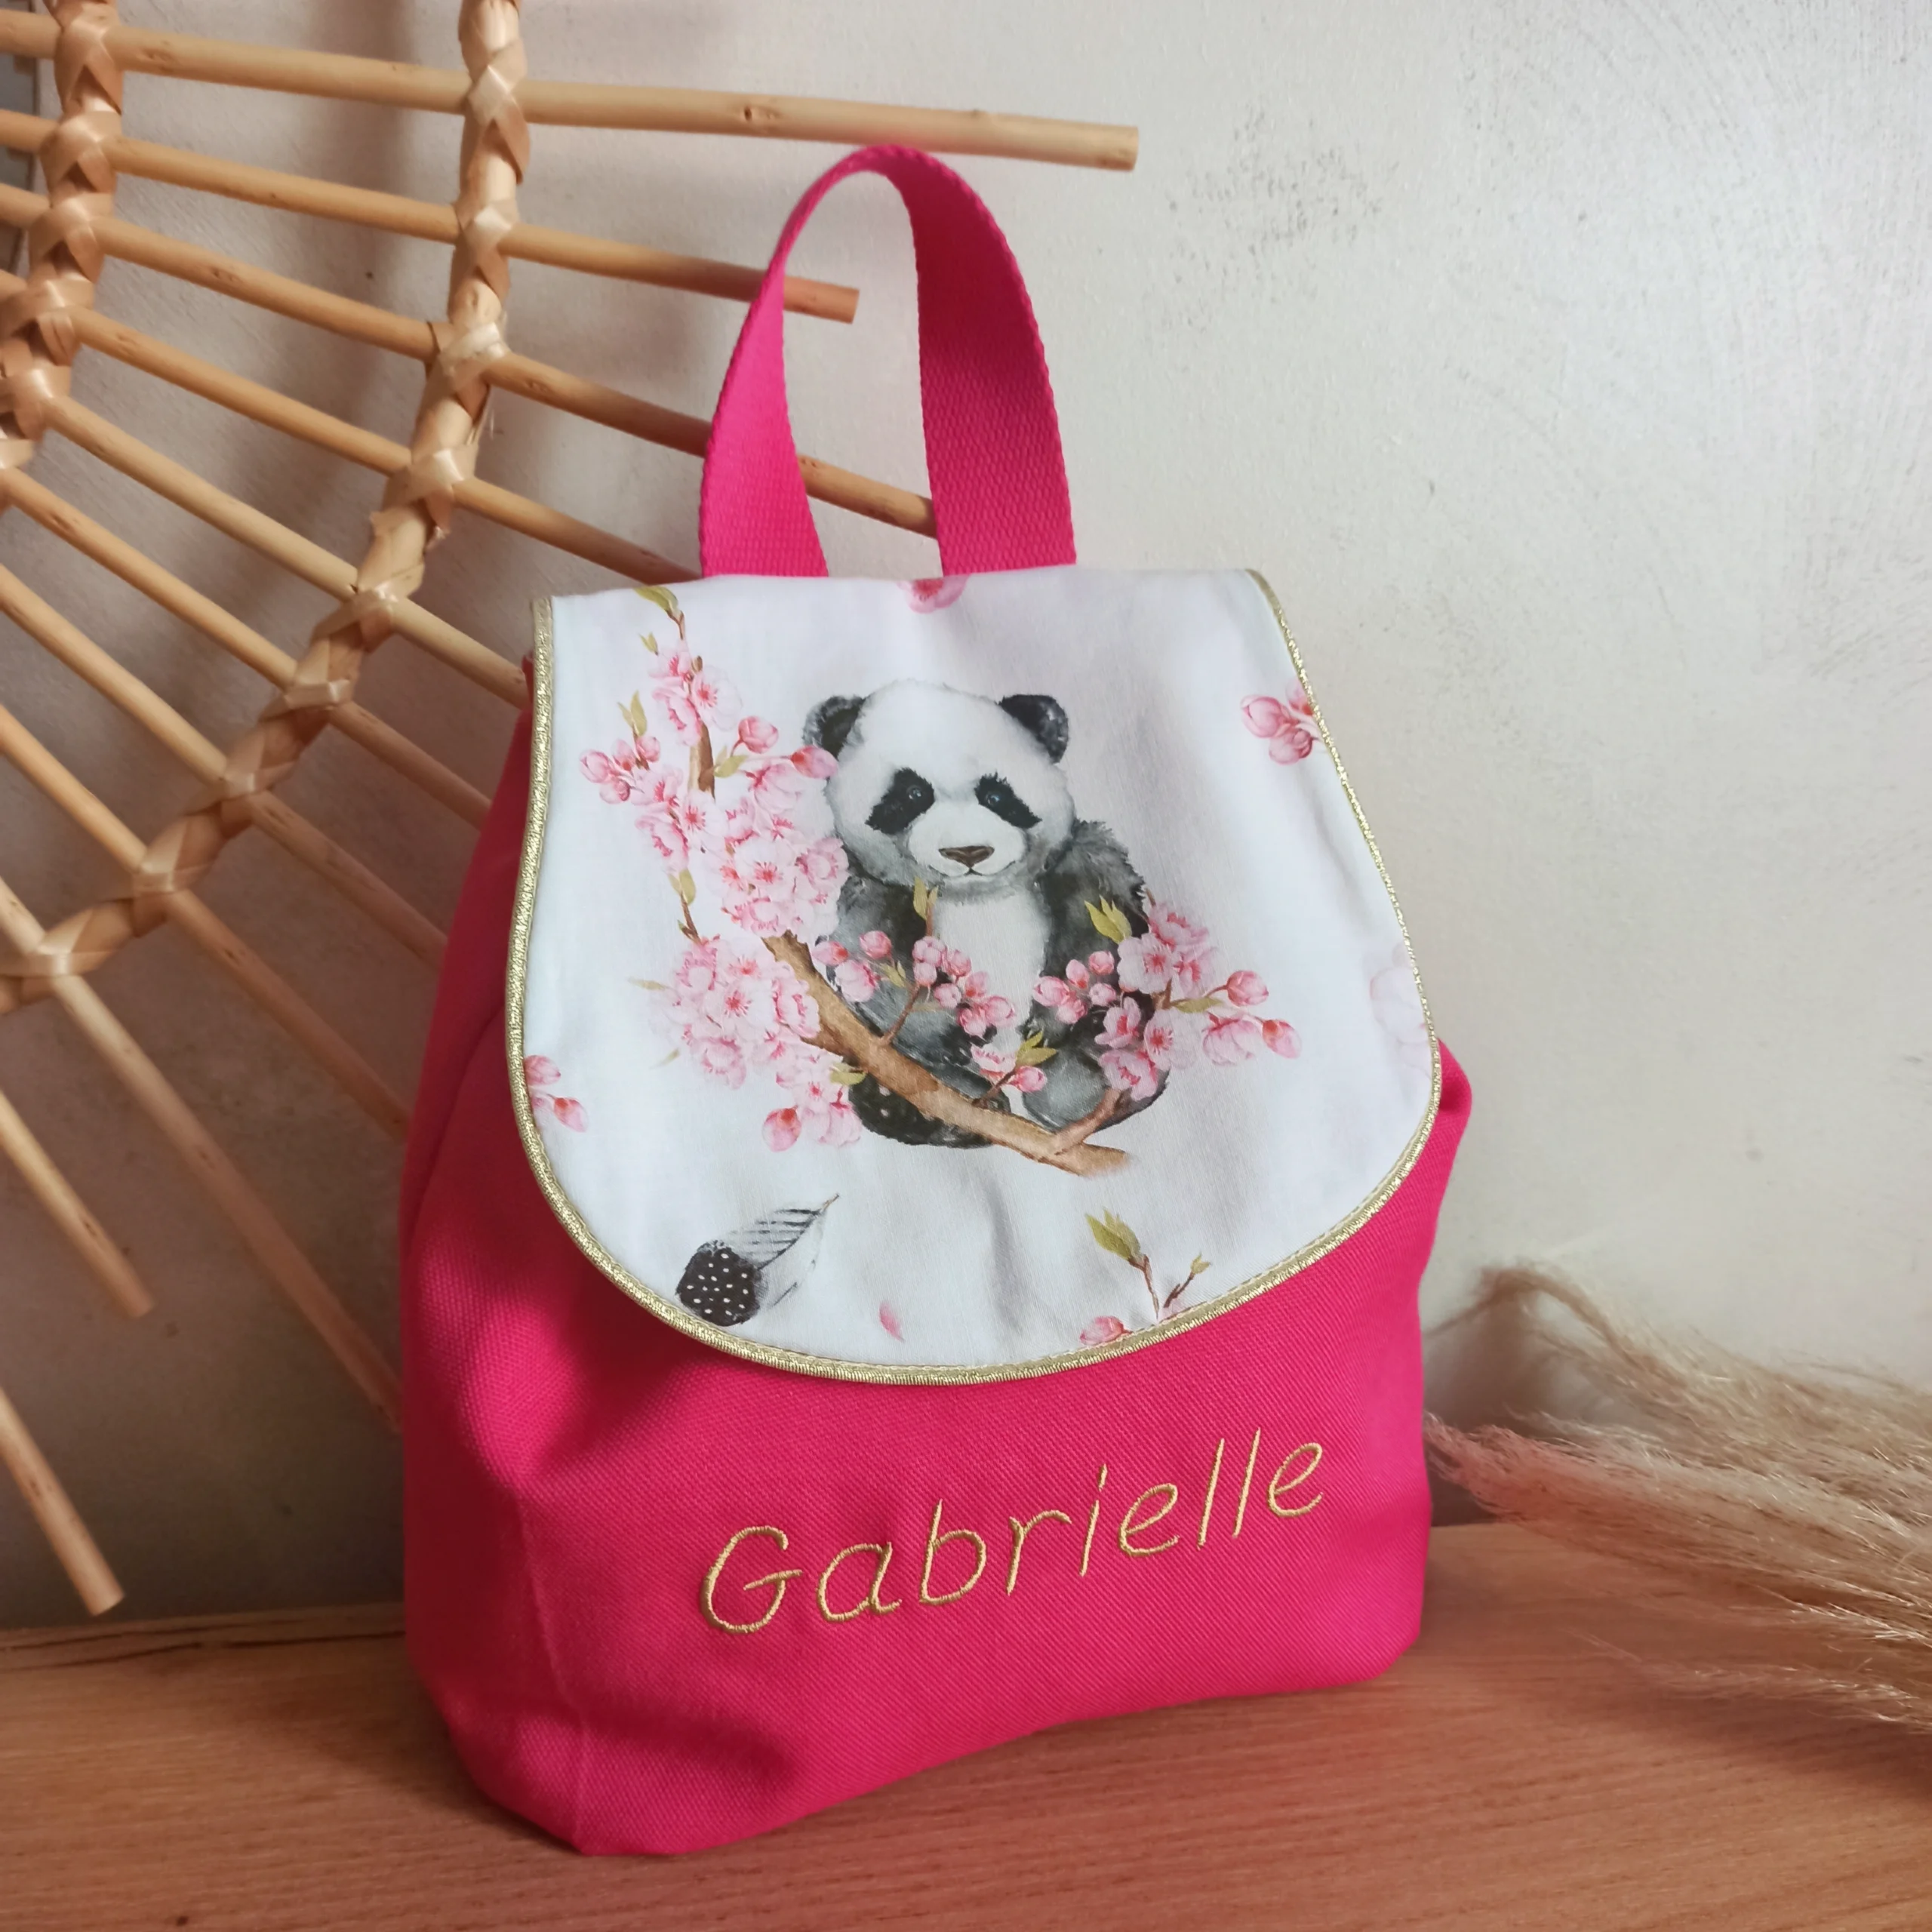 Le sac à dos panda love